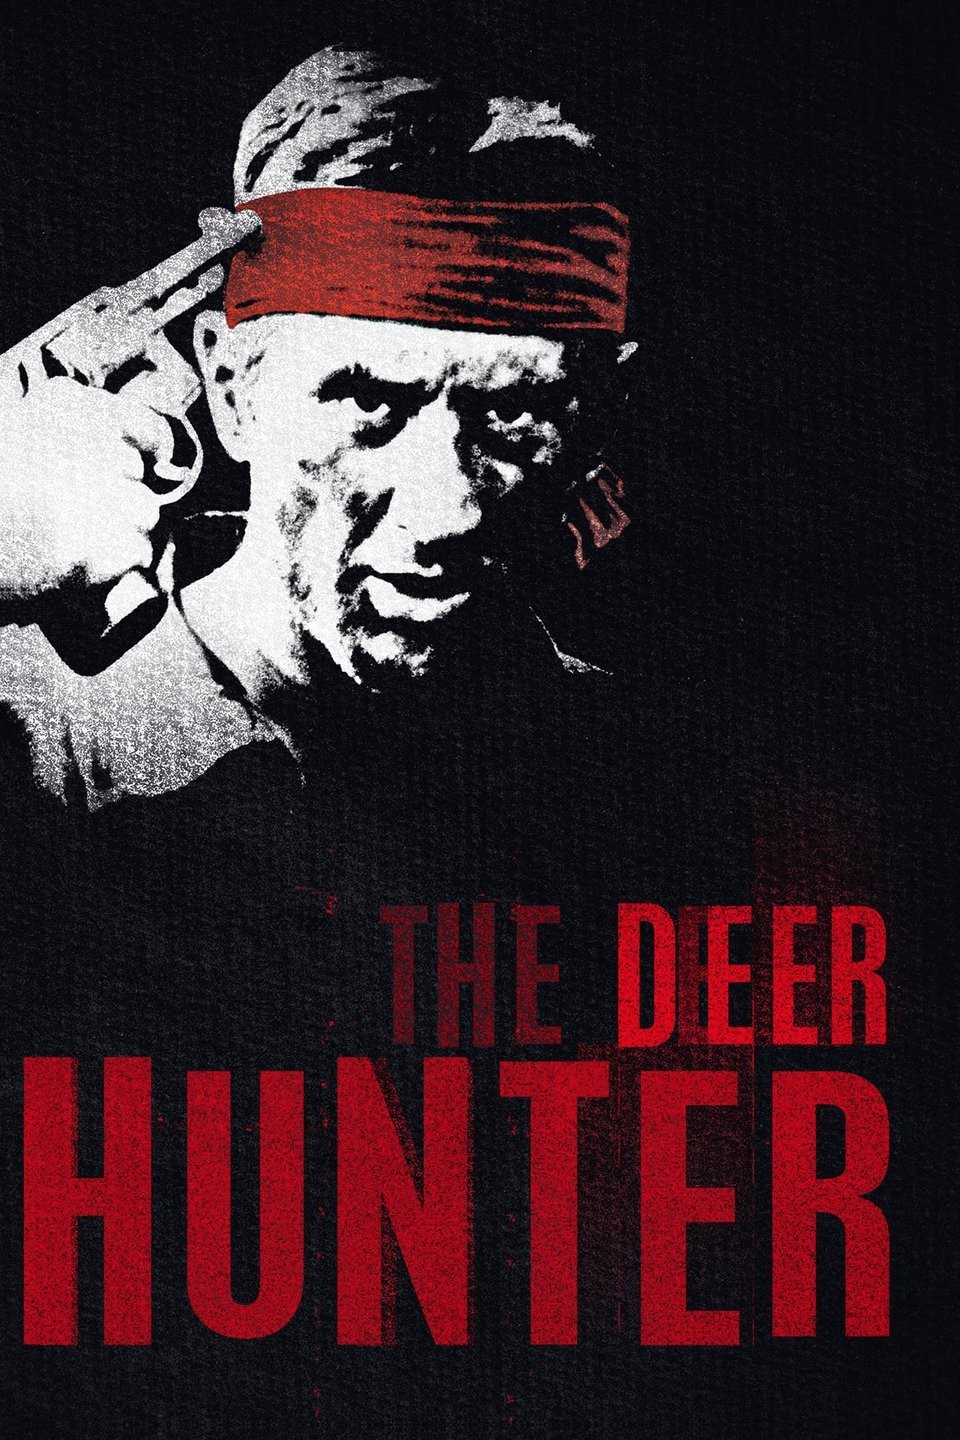 Friday Hunt – Hunter X Hunter challenge week 17 - I drink and